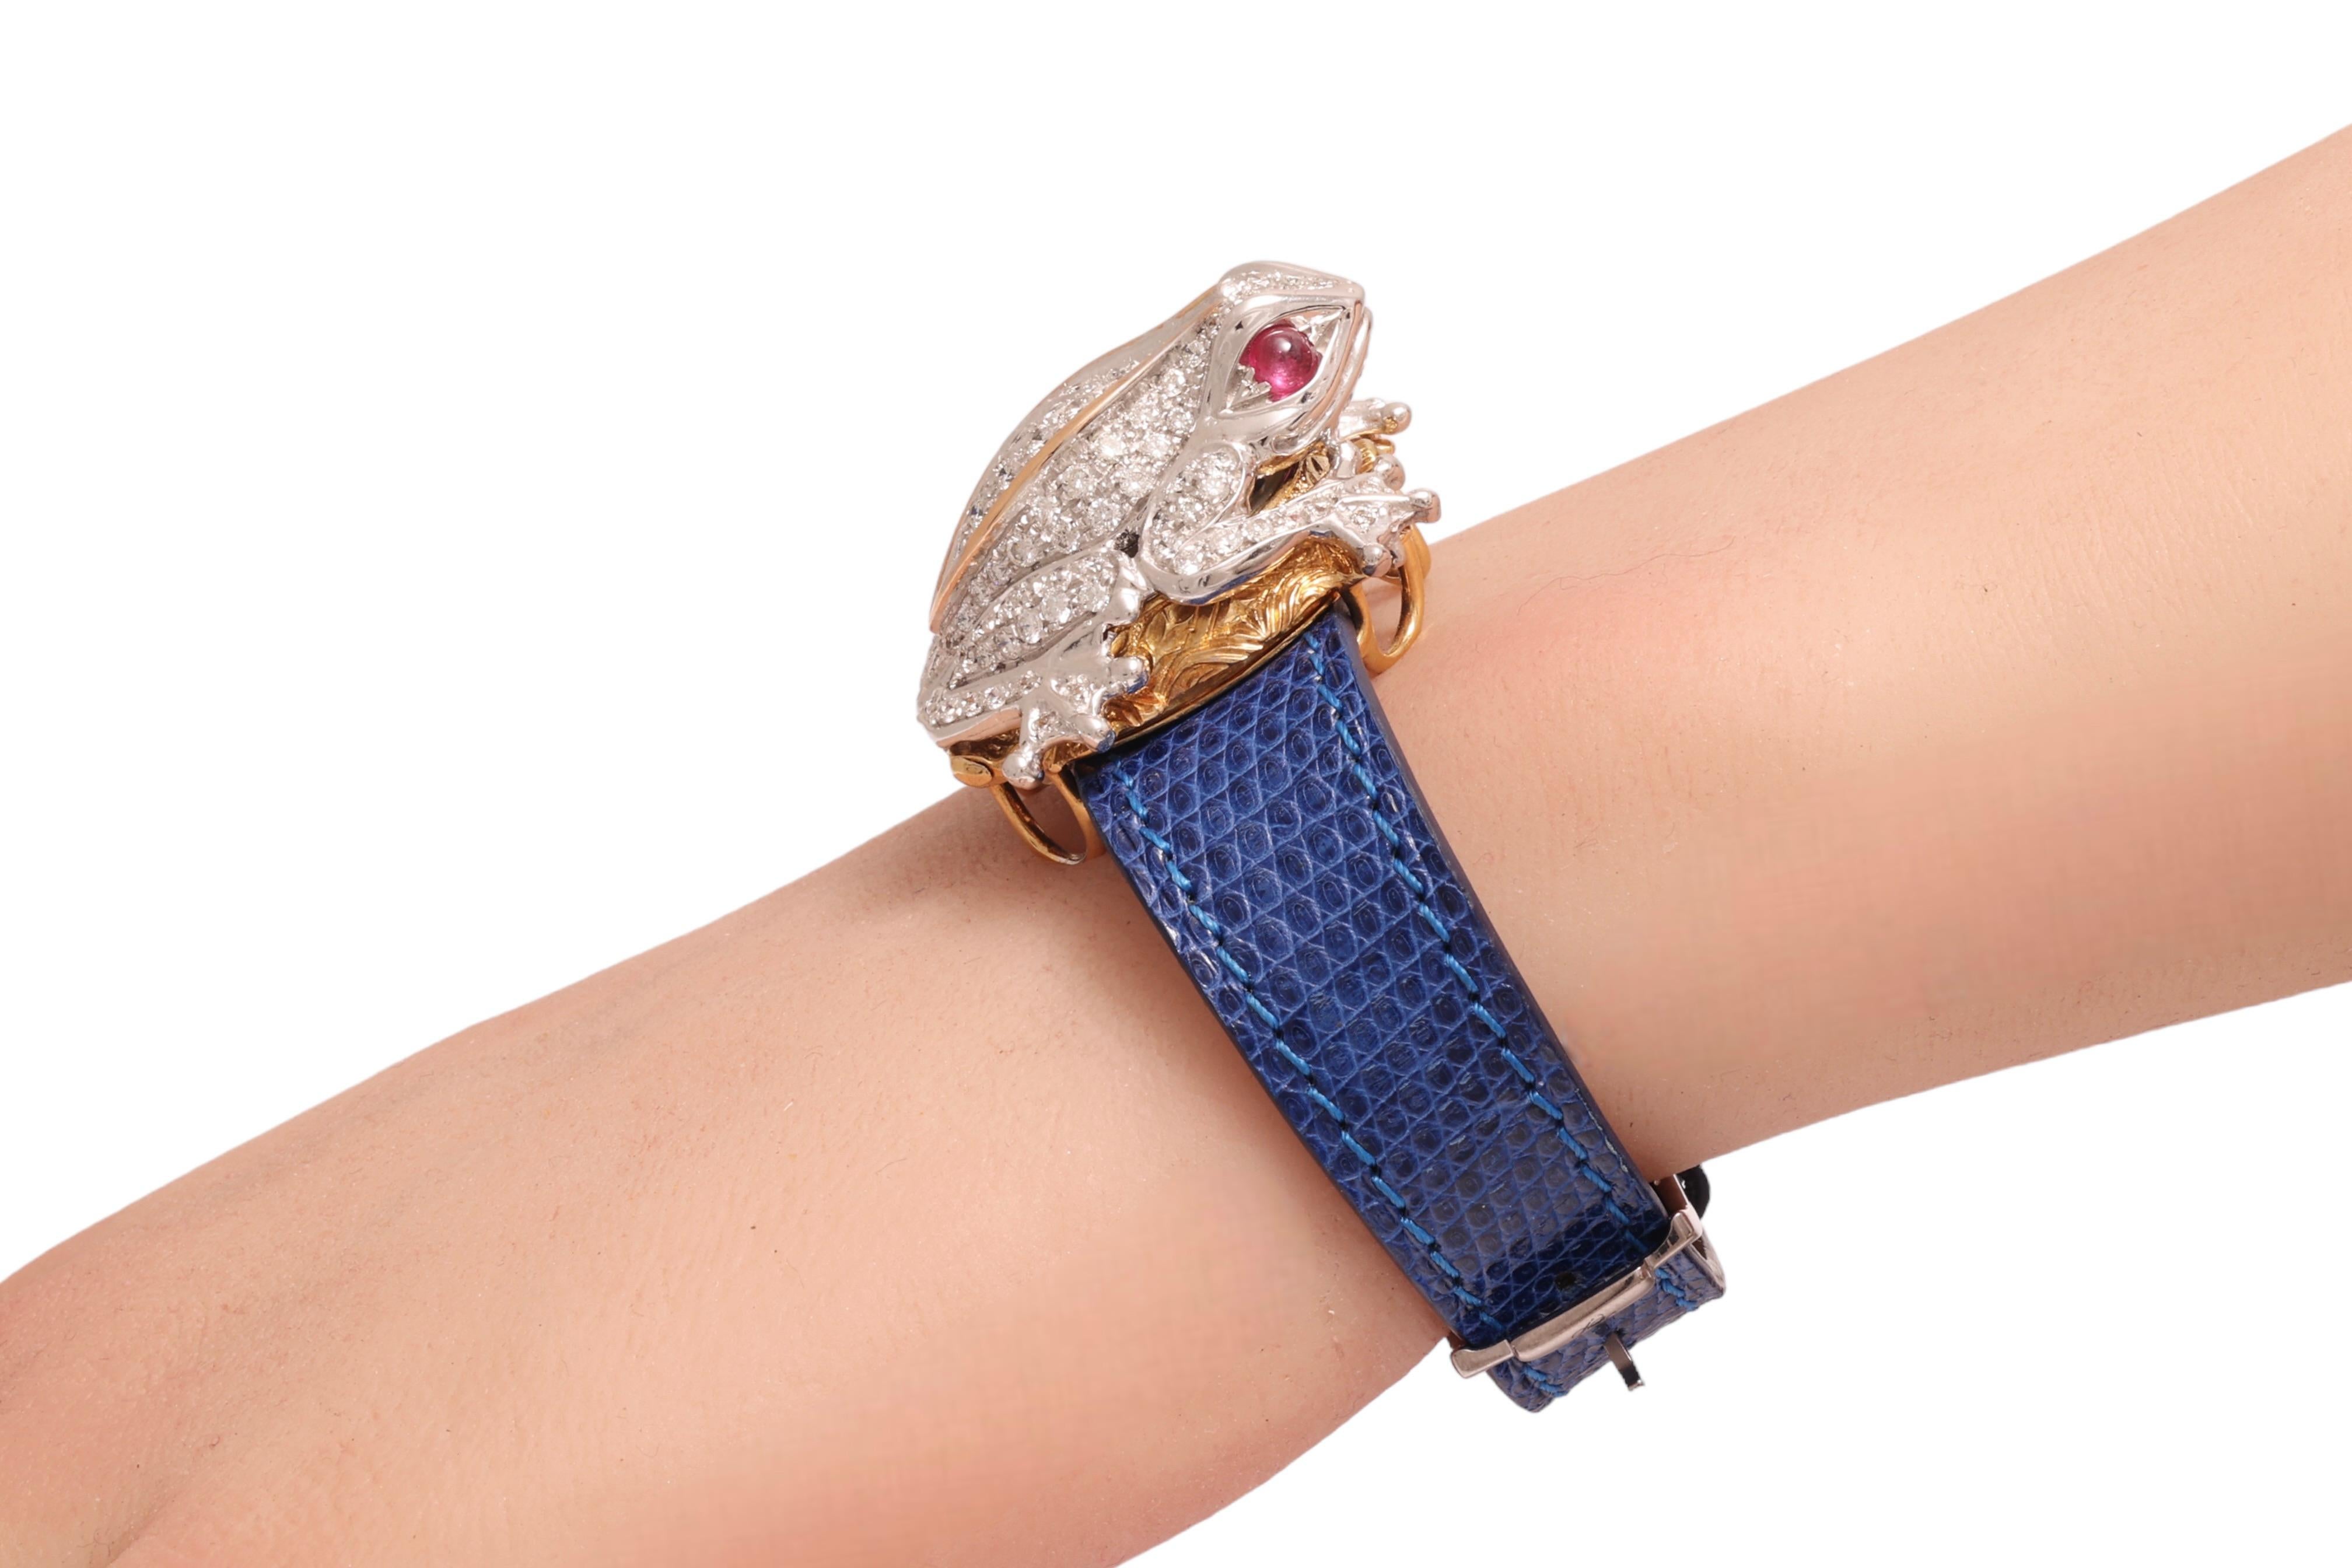 Zannetti Rana Scrigno Jewel Frog Wrist Watch / Bracelet, Diamonds & Ruby's For Sale 6